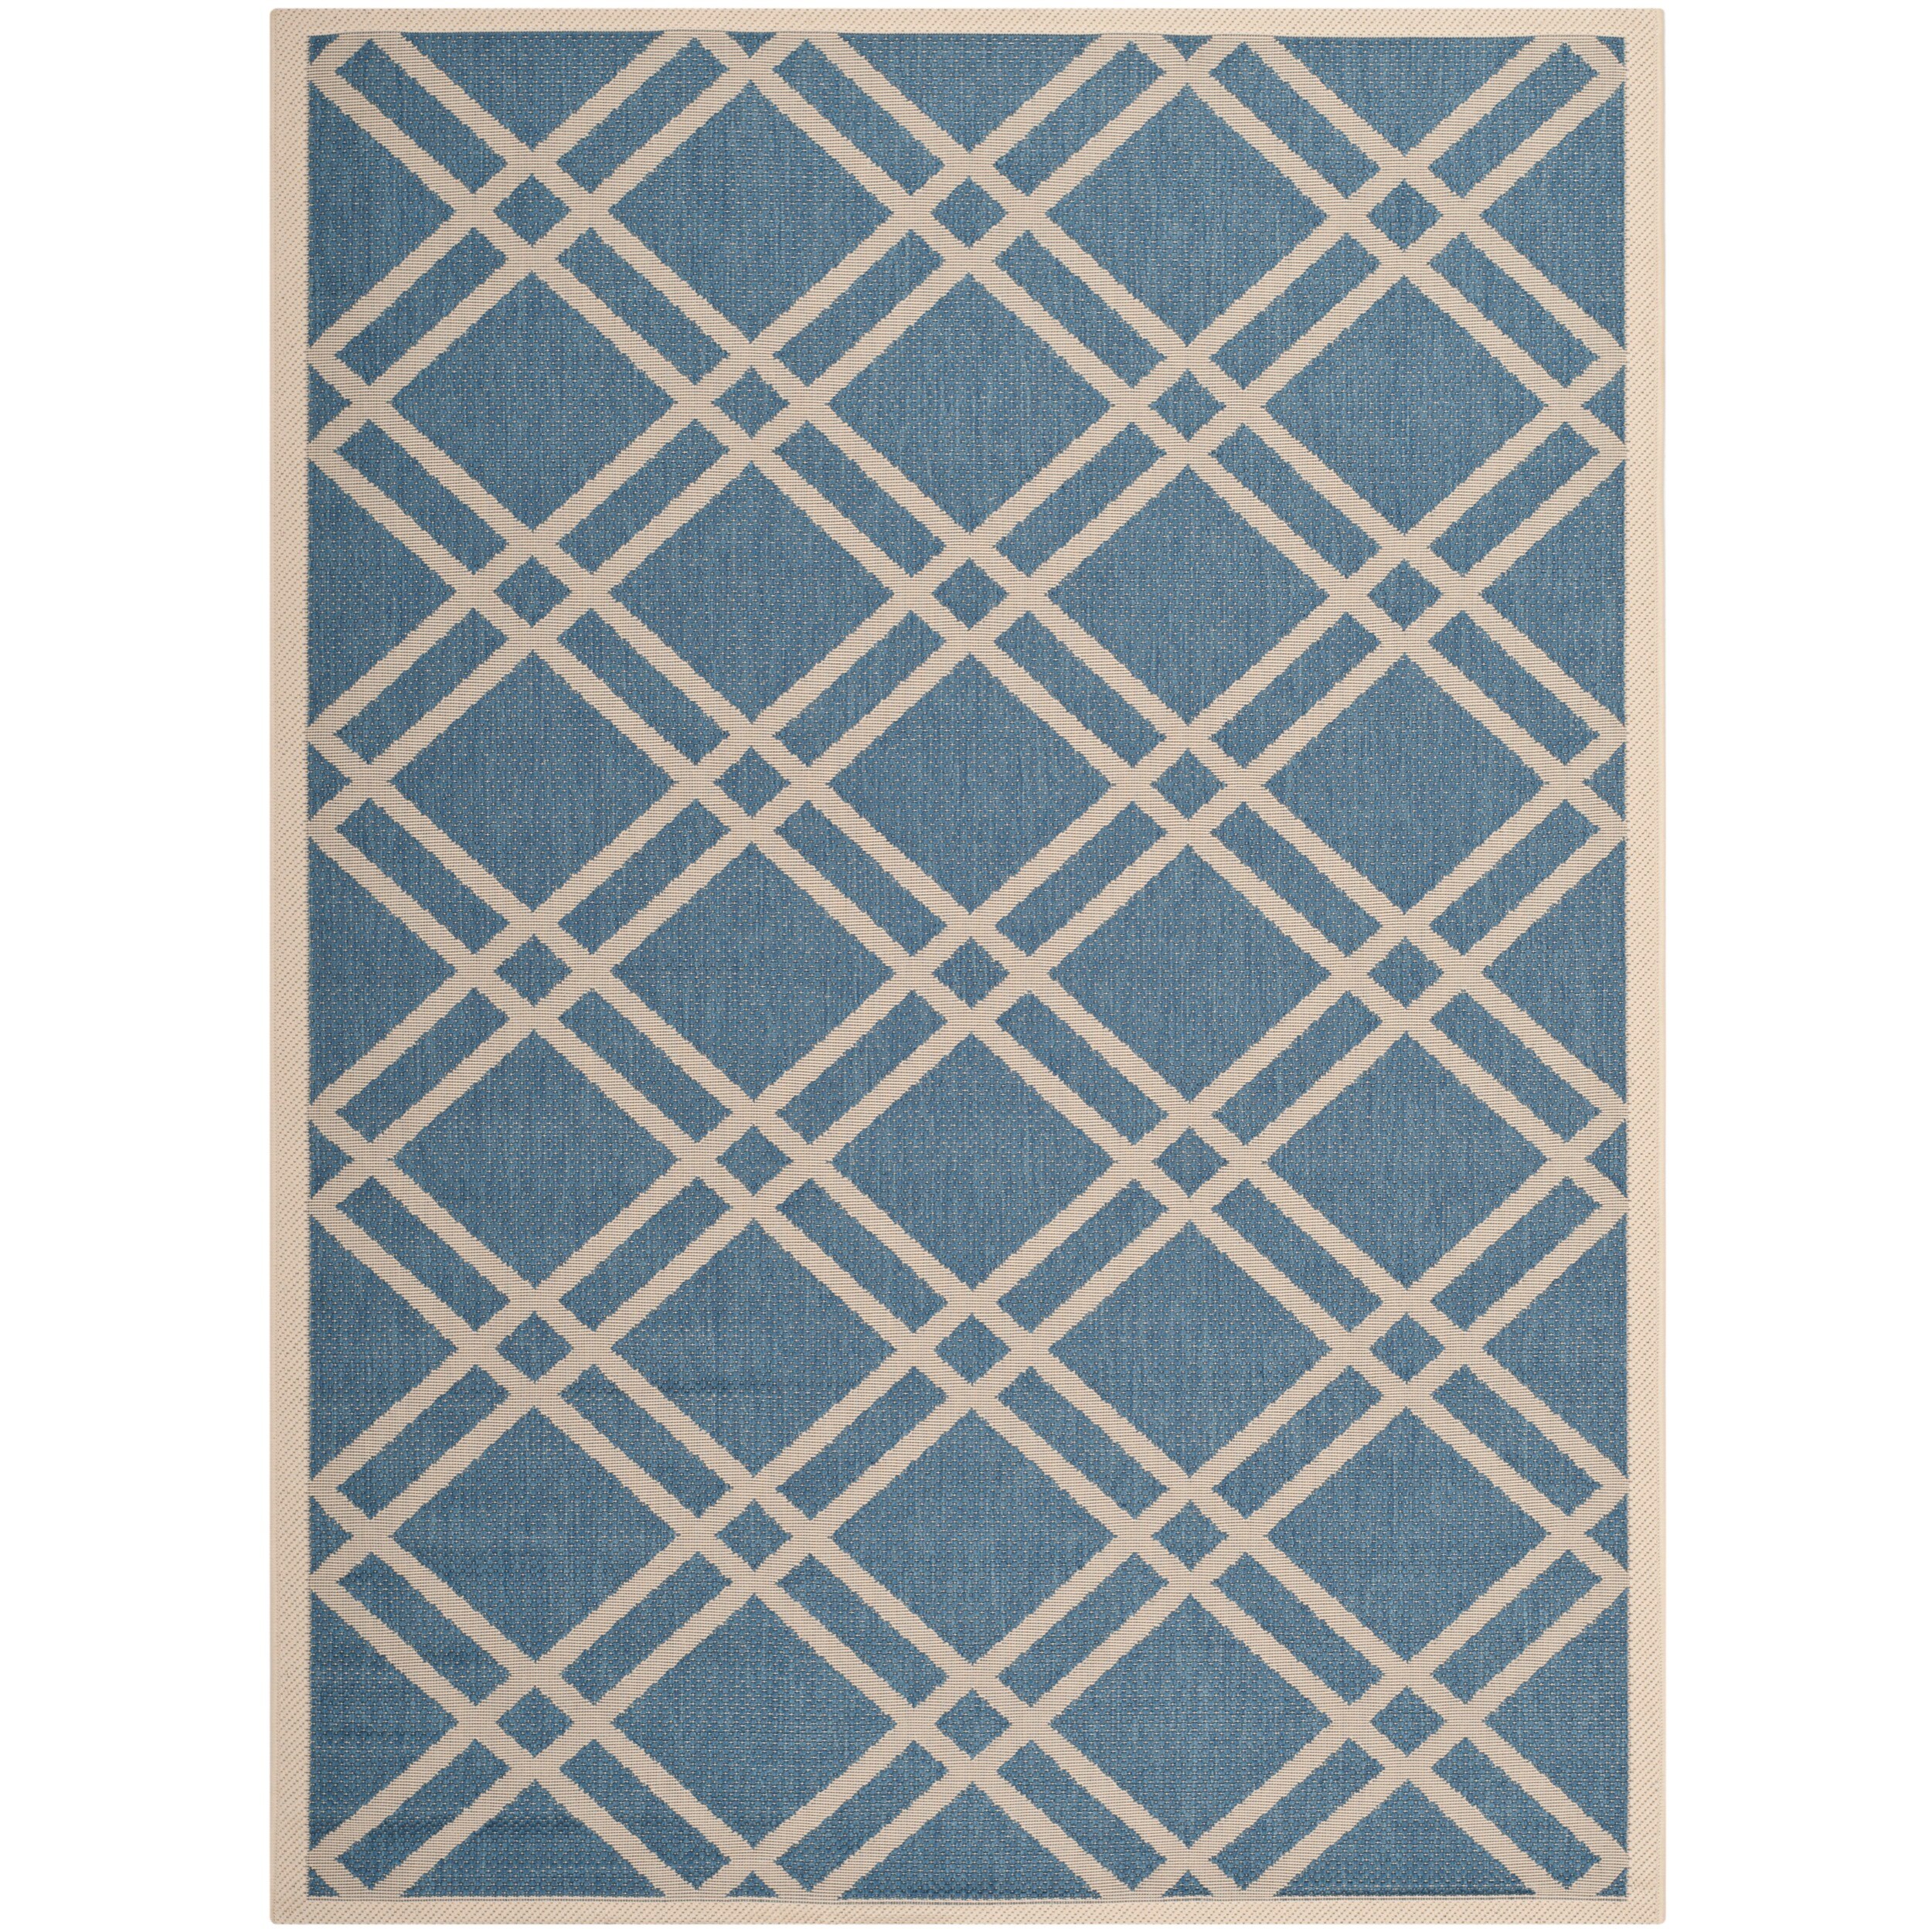 Safavieh Indoor/ Outdoor Courtyard Crisscross pattern Blue/ Beige Rug (4 X 57)